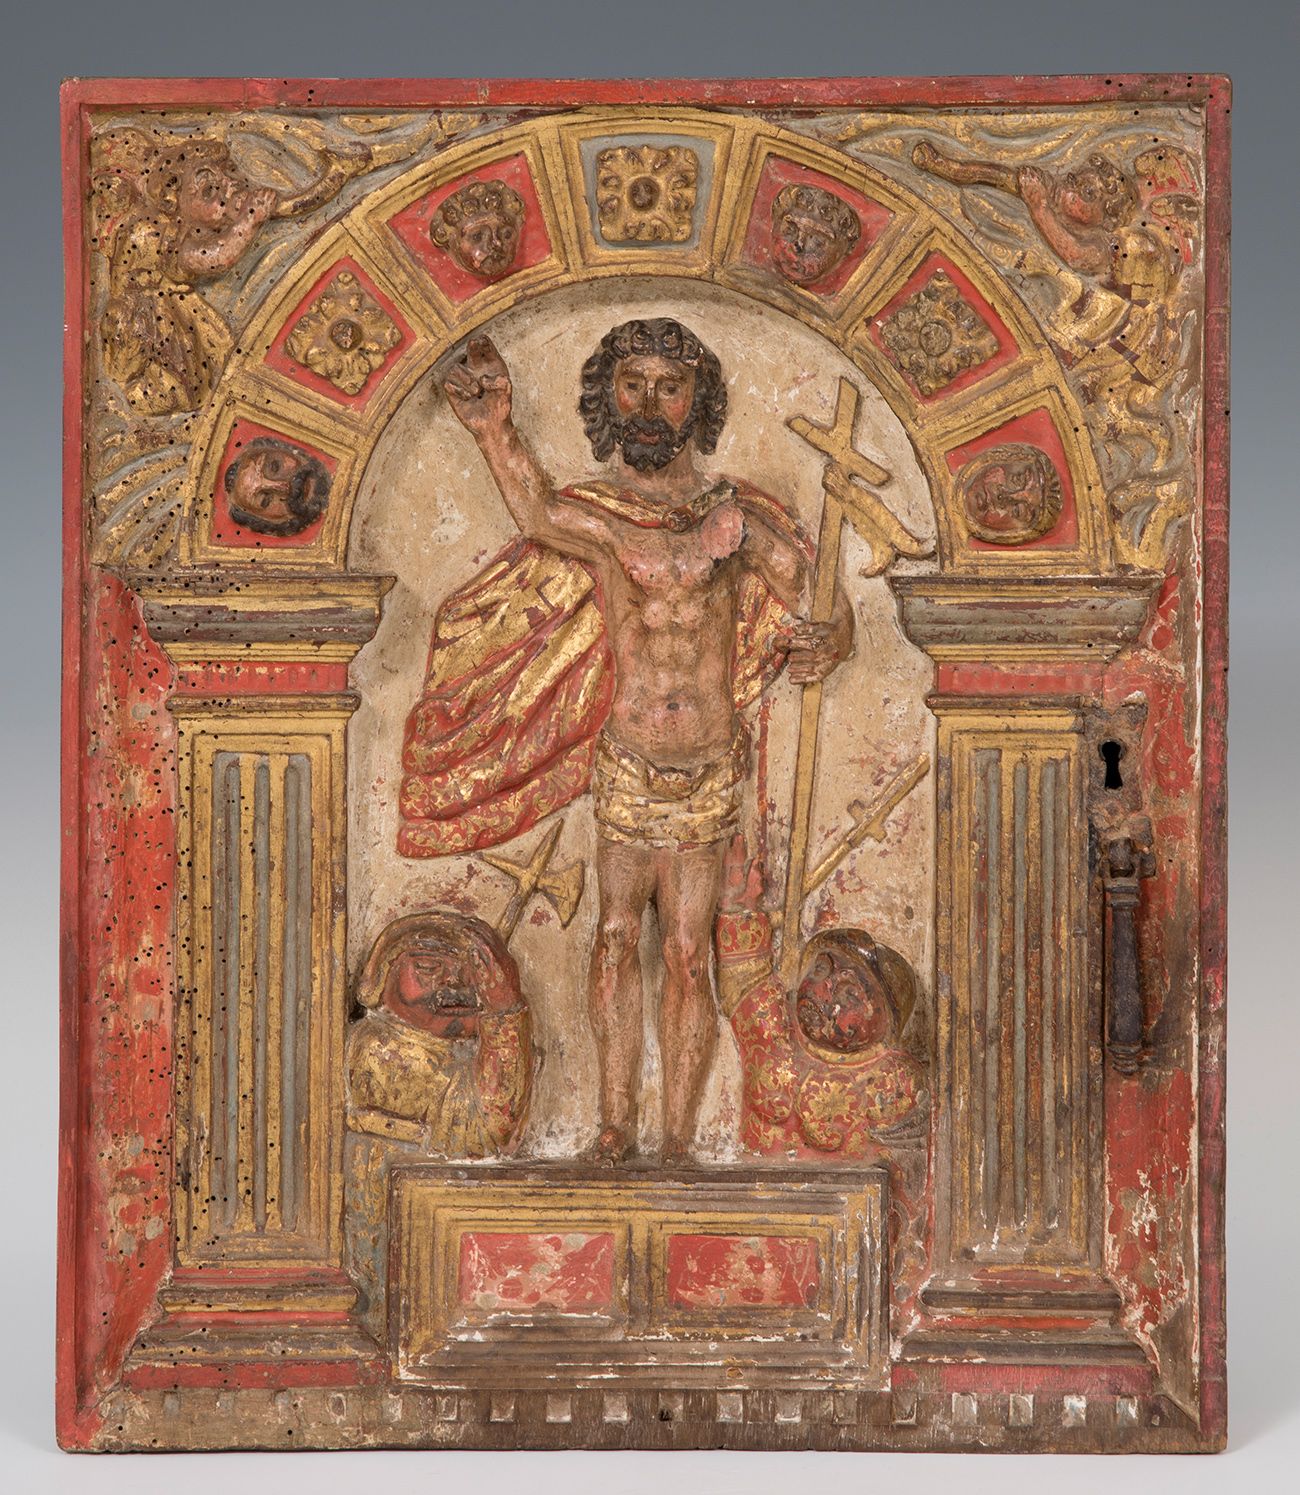 Null 礼拜堂的门。西班牙学校，16世纪。
基督的复活。
雕刻和多色木。
尺寸。42 x 36厘米。
雕刻和多色木制成的祭坛帐幕的门，仍保留了部分金属配件。在&hellip;